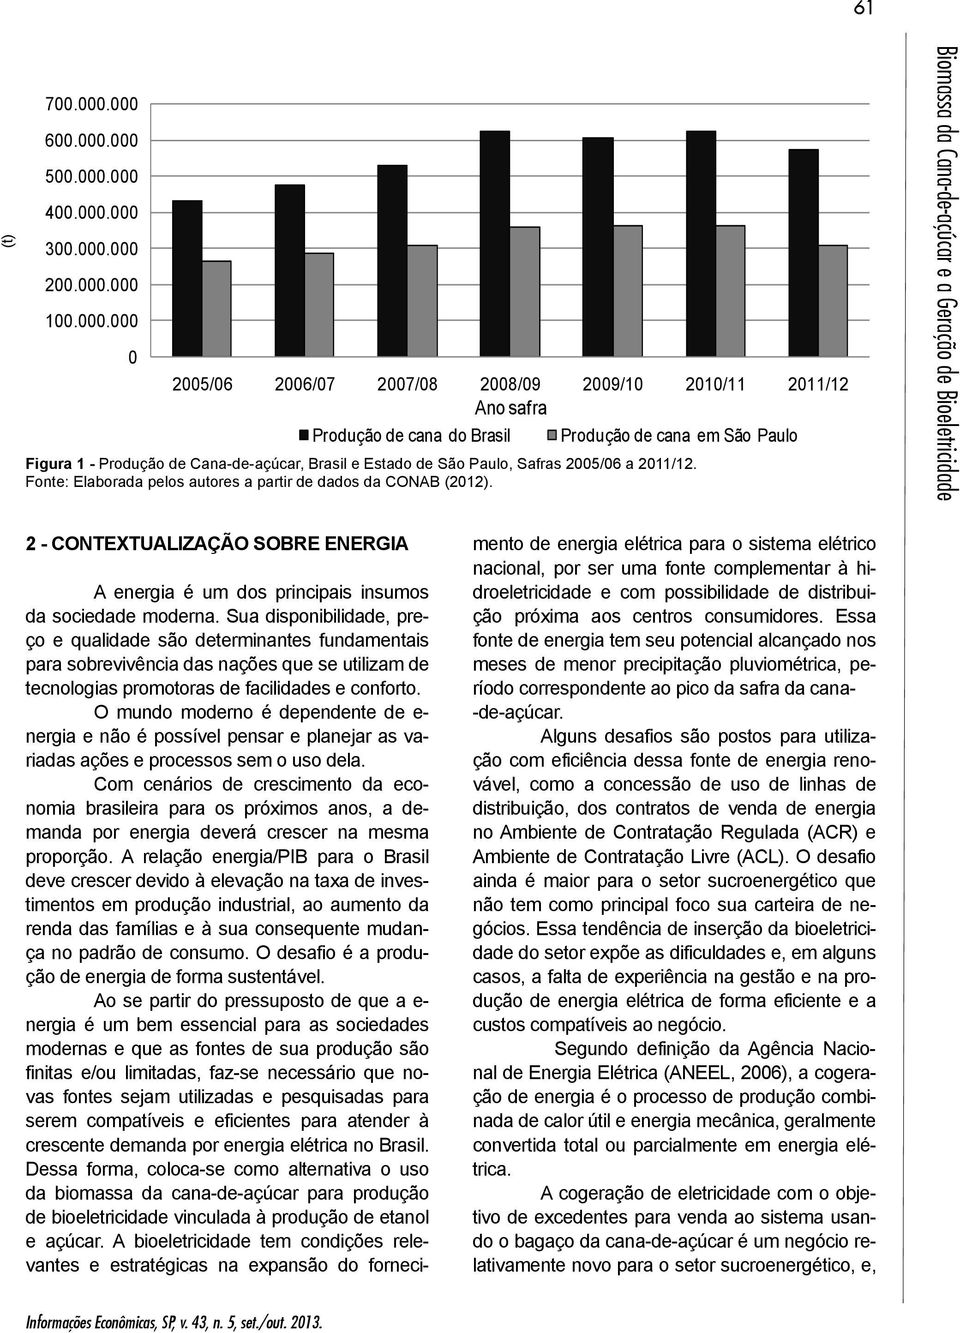 Paulo Figura 1 - Produção de Cana-de-açúcar, Brasil e Estado de São Paulo, Safras 2005/06 a 2011/12. Fonte: Elaborada pelos autores a partir de dados da CONAB (2012).